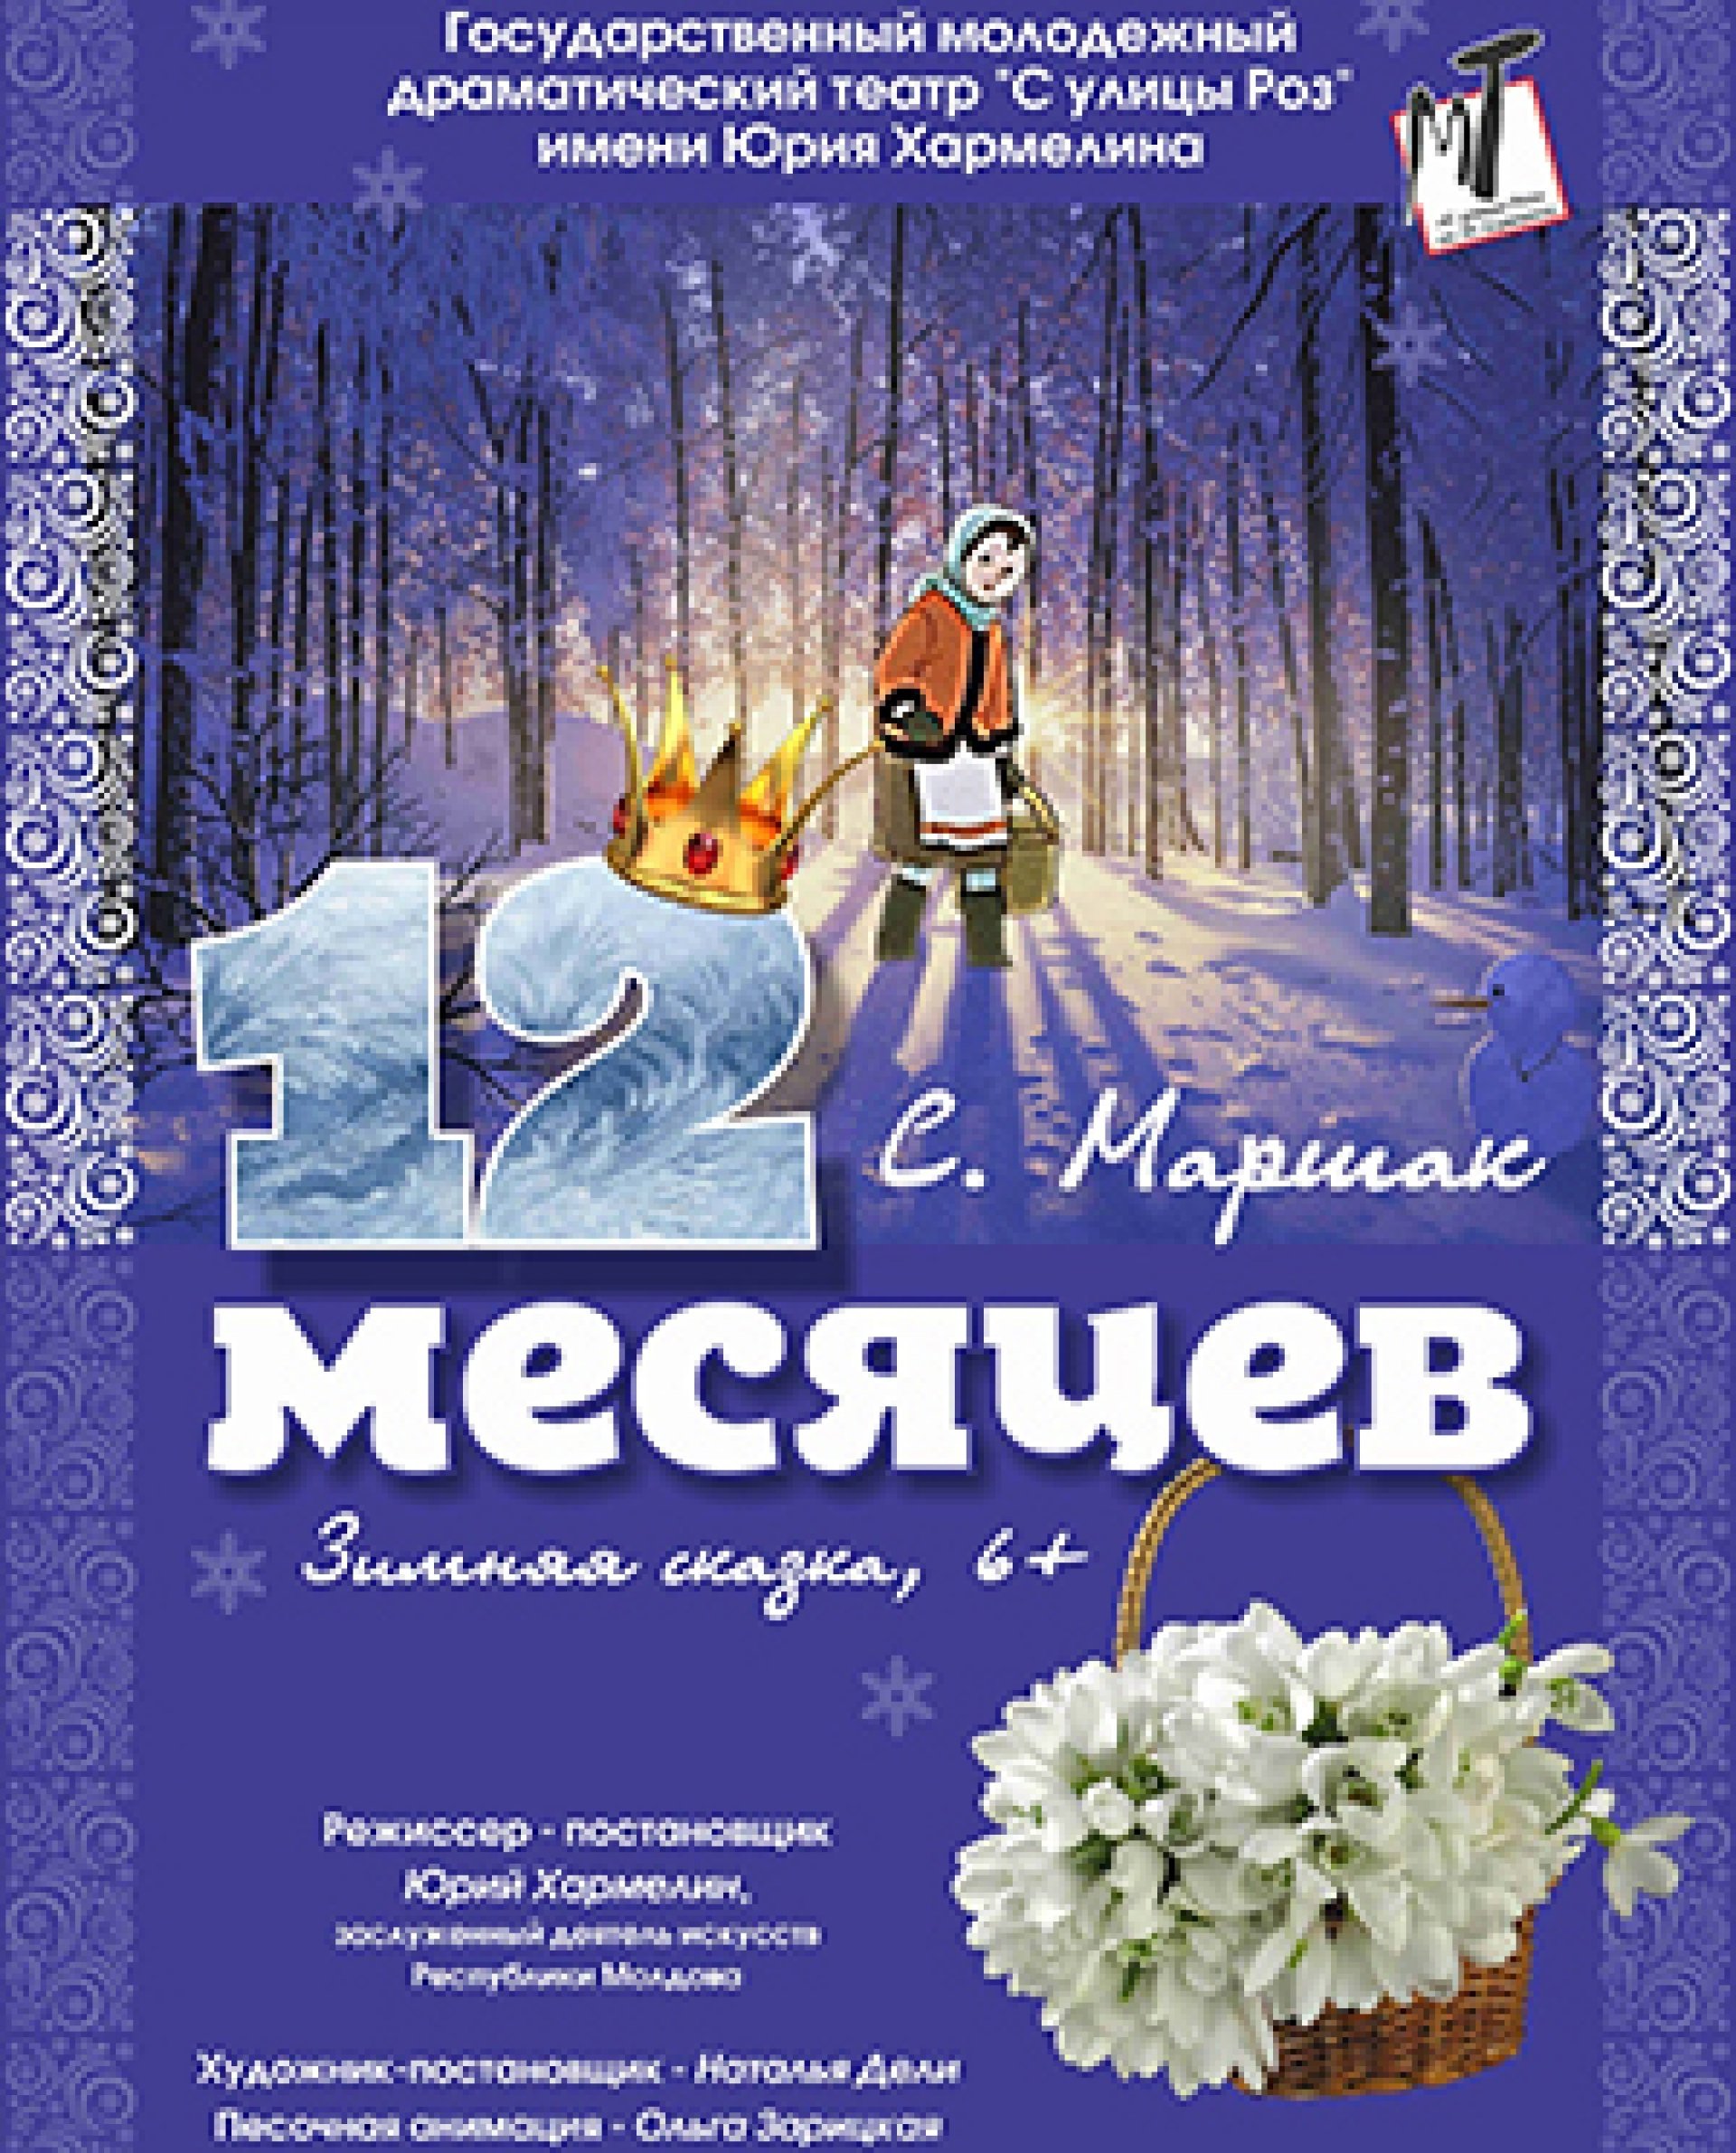 ДВЕНАДЦАТЬ МЕСЯЦЕВ - 16.01.22 в 12-00